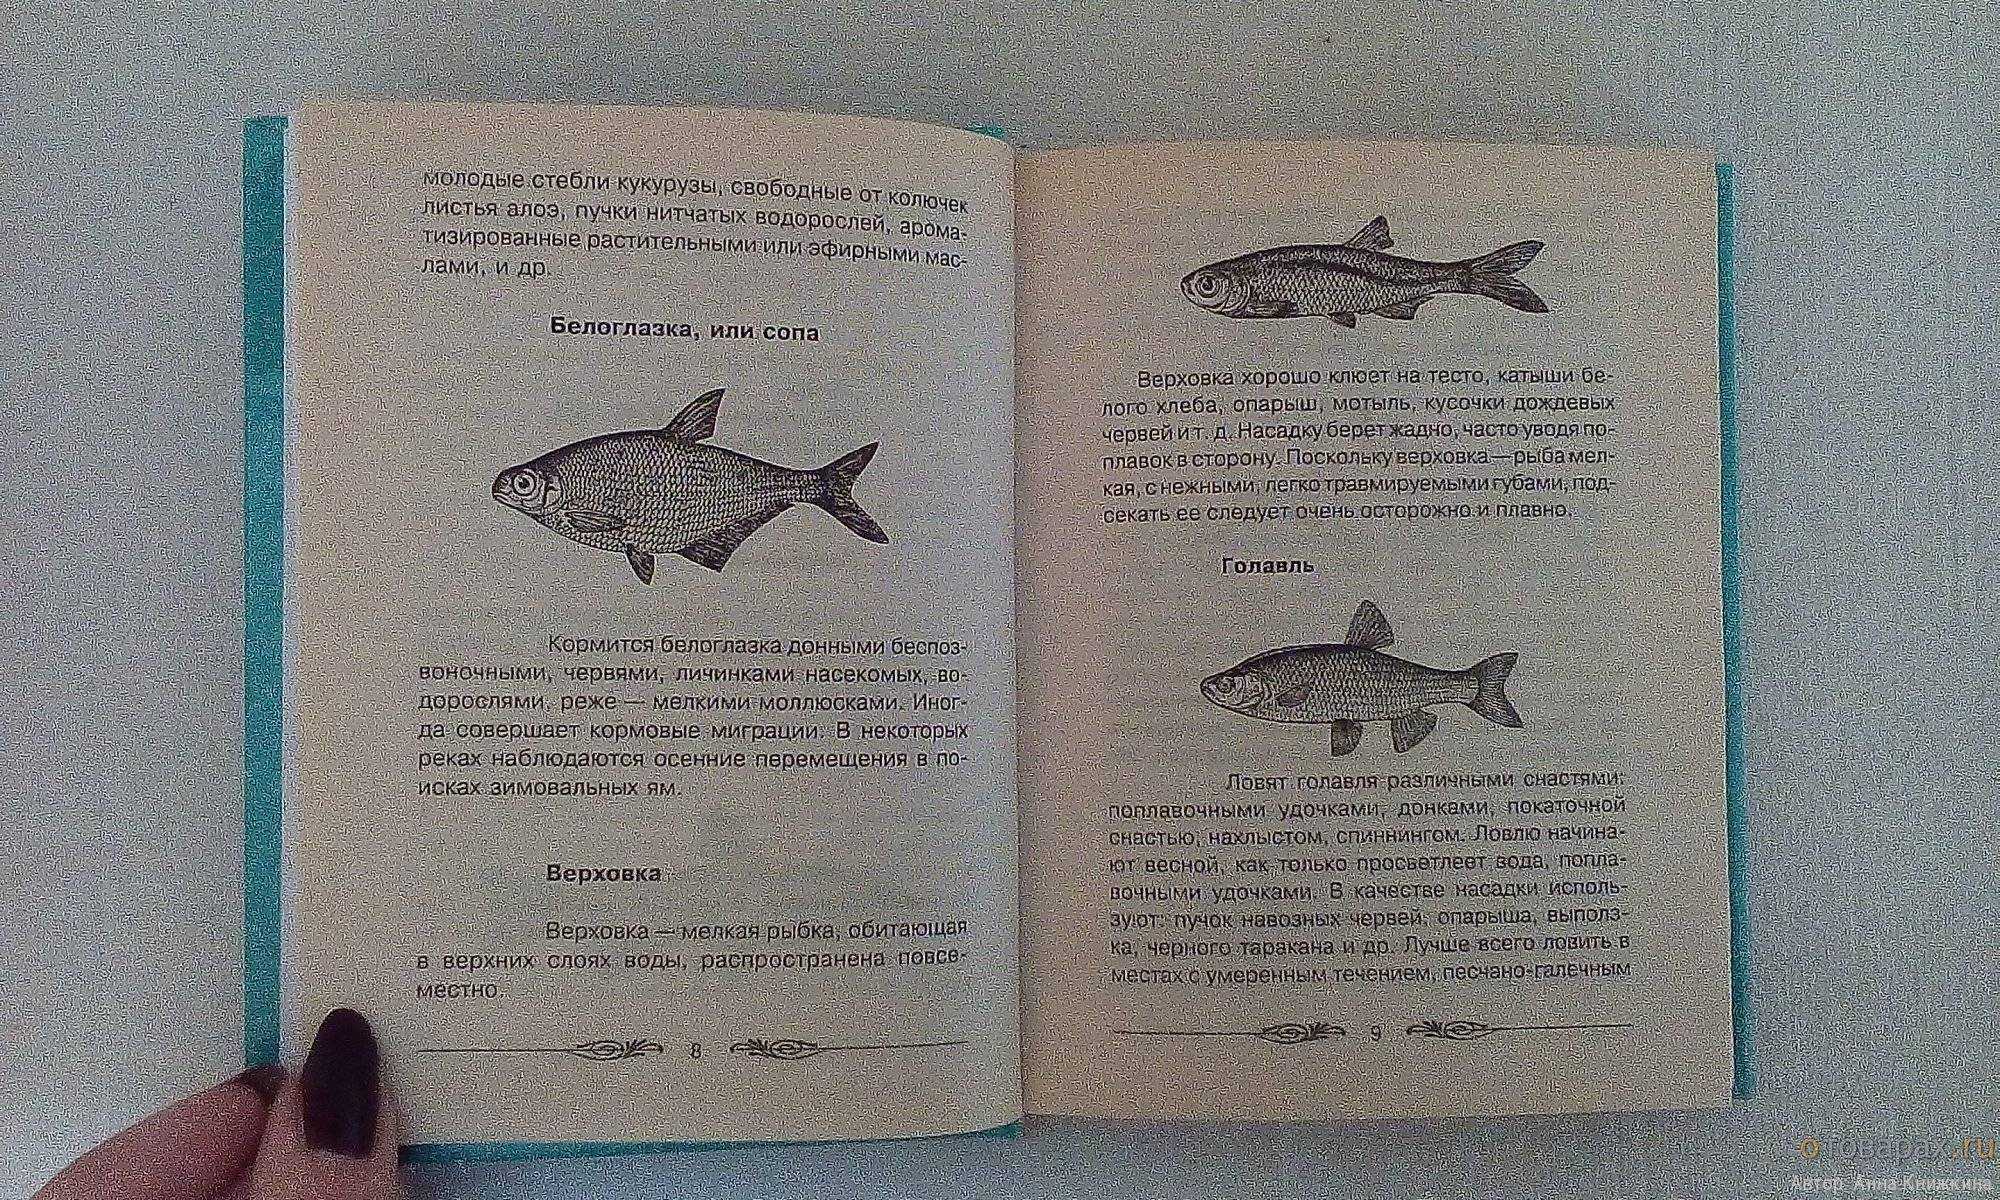 Пономарев ф.а. профессиональная лексика рыболовства. словарь - страницы истории рыболовства